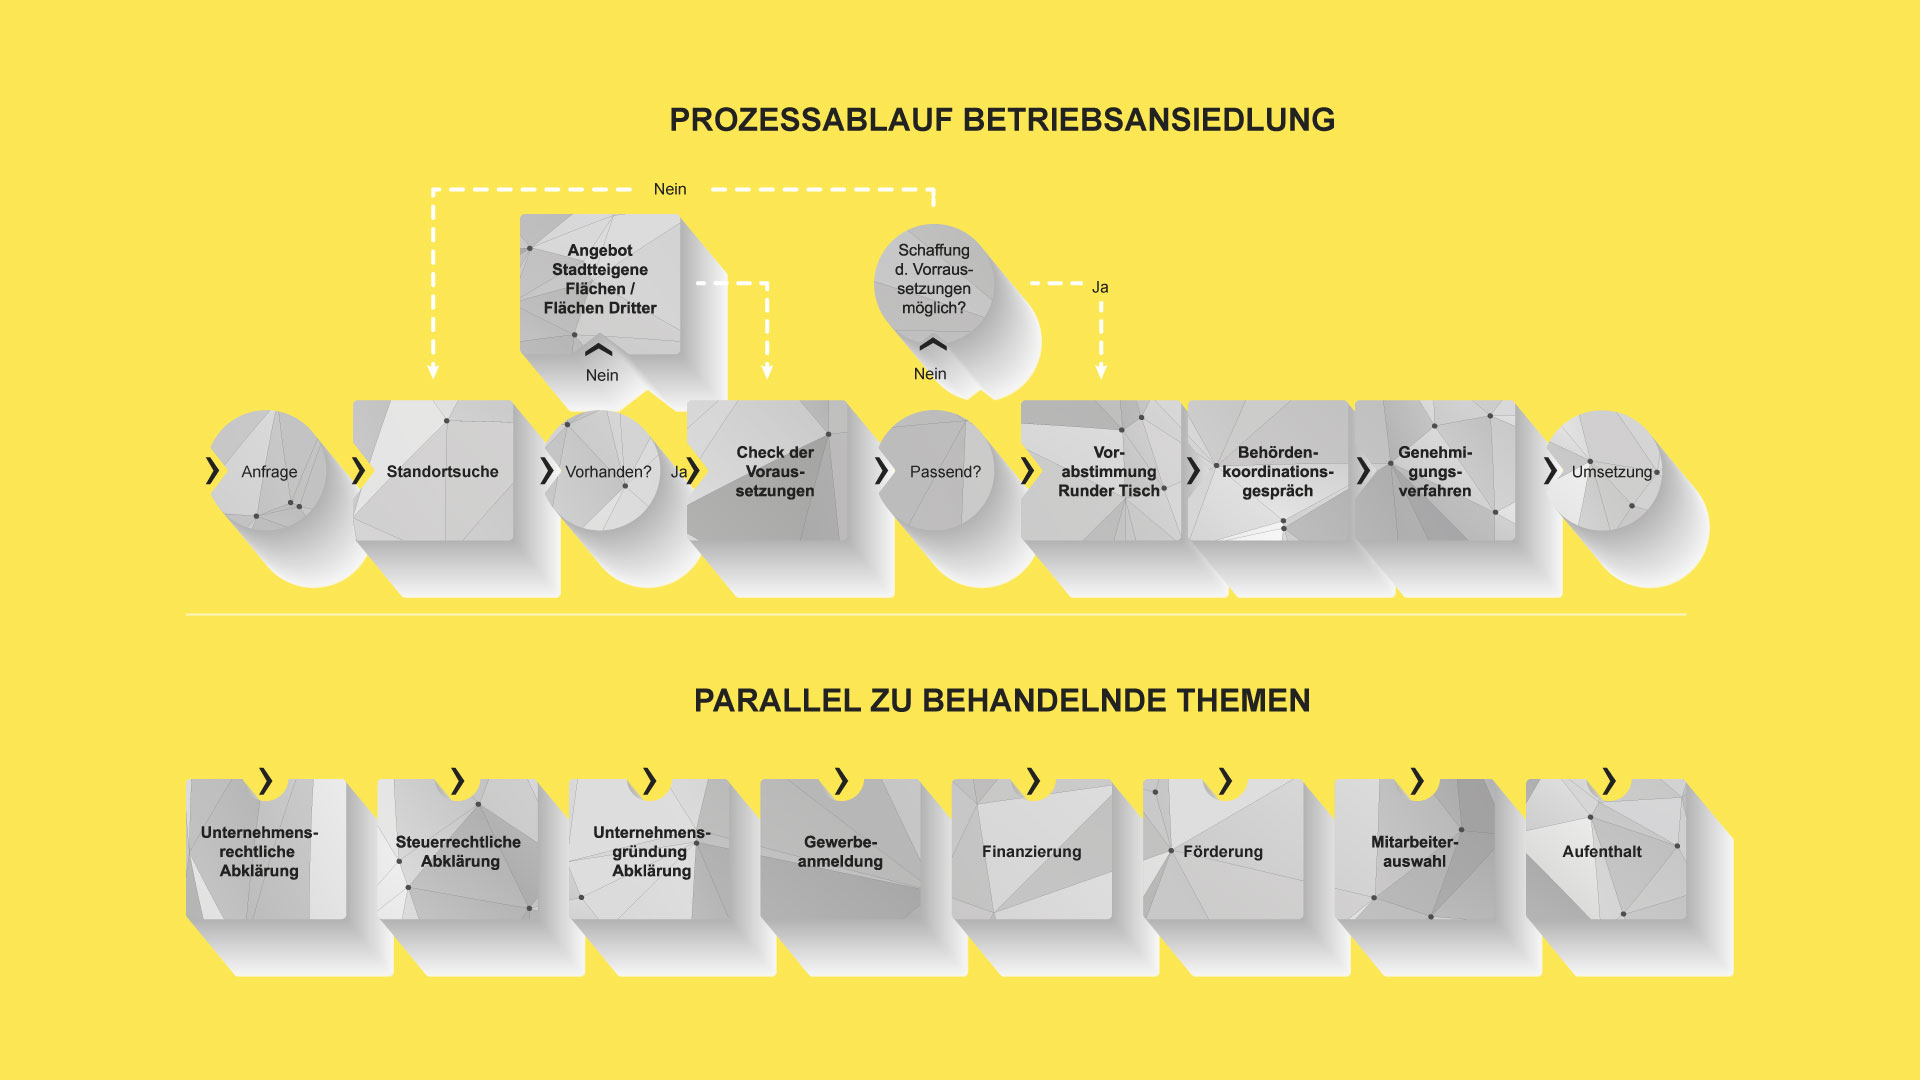 Grafik zum Prozessablauf der Betriebsansiedlung